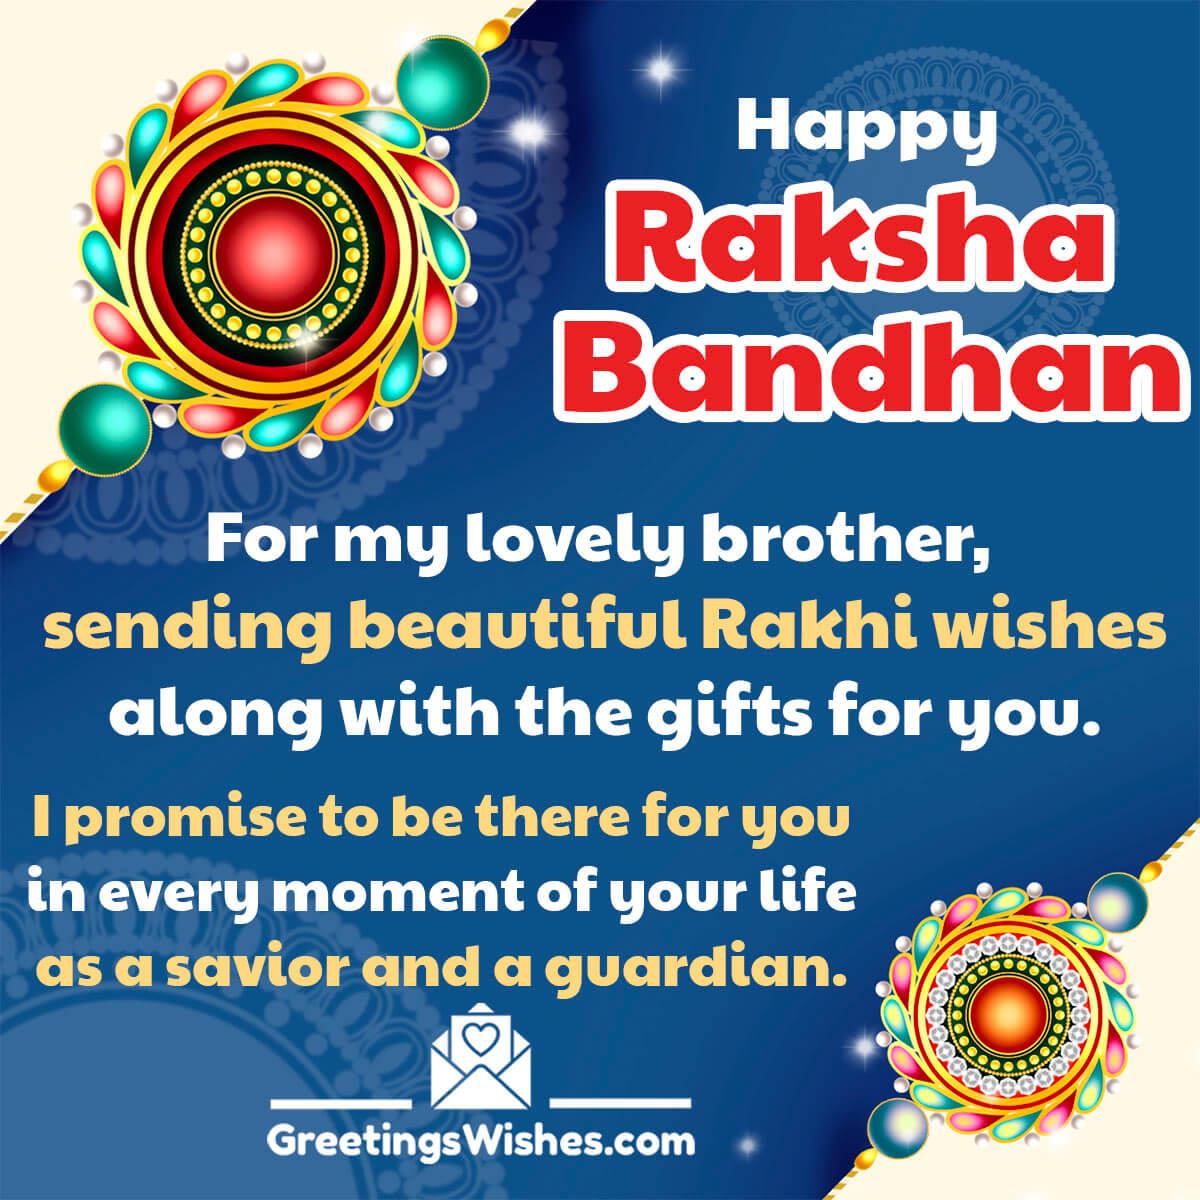 Brautiful Raksha Bandhan Wishes